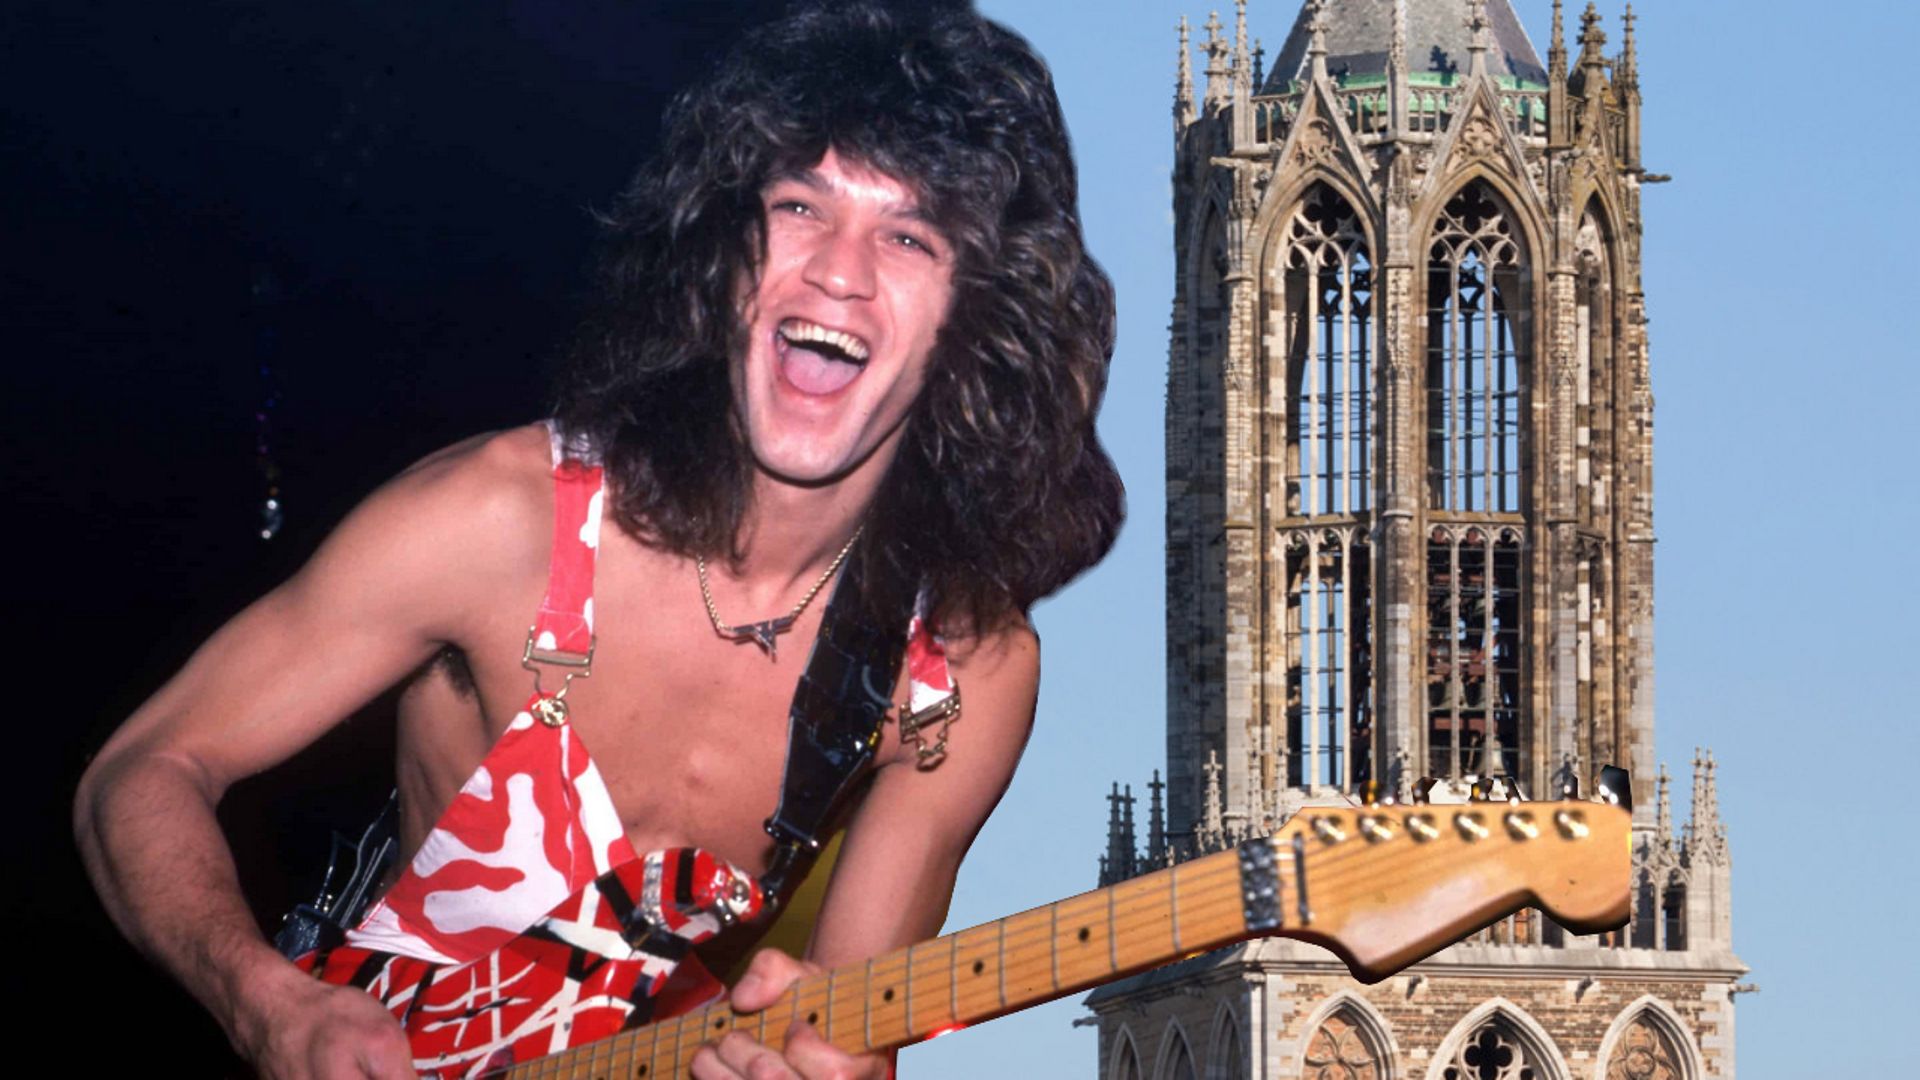 [Zapping 21] Un hommage à Eddie Van Halen depuis le plus haut clocher des Pays-Bas